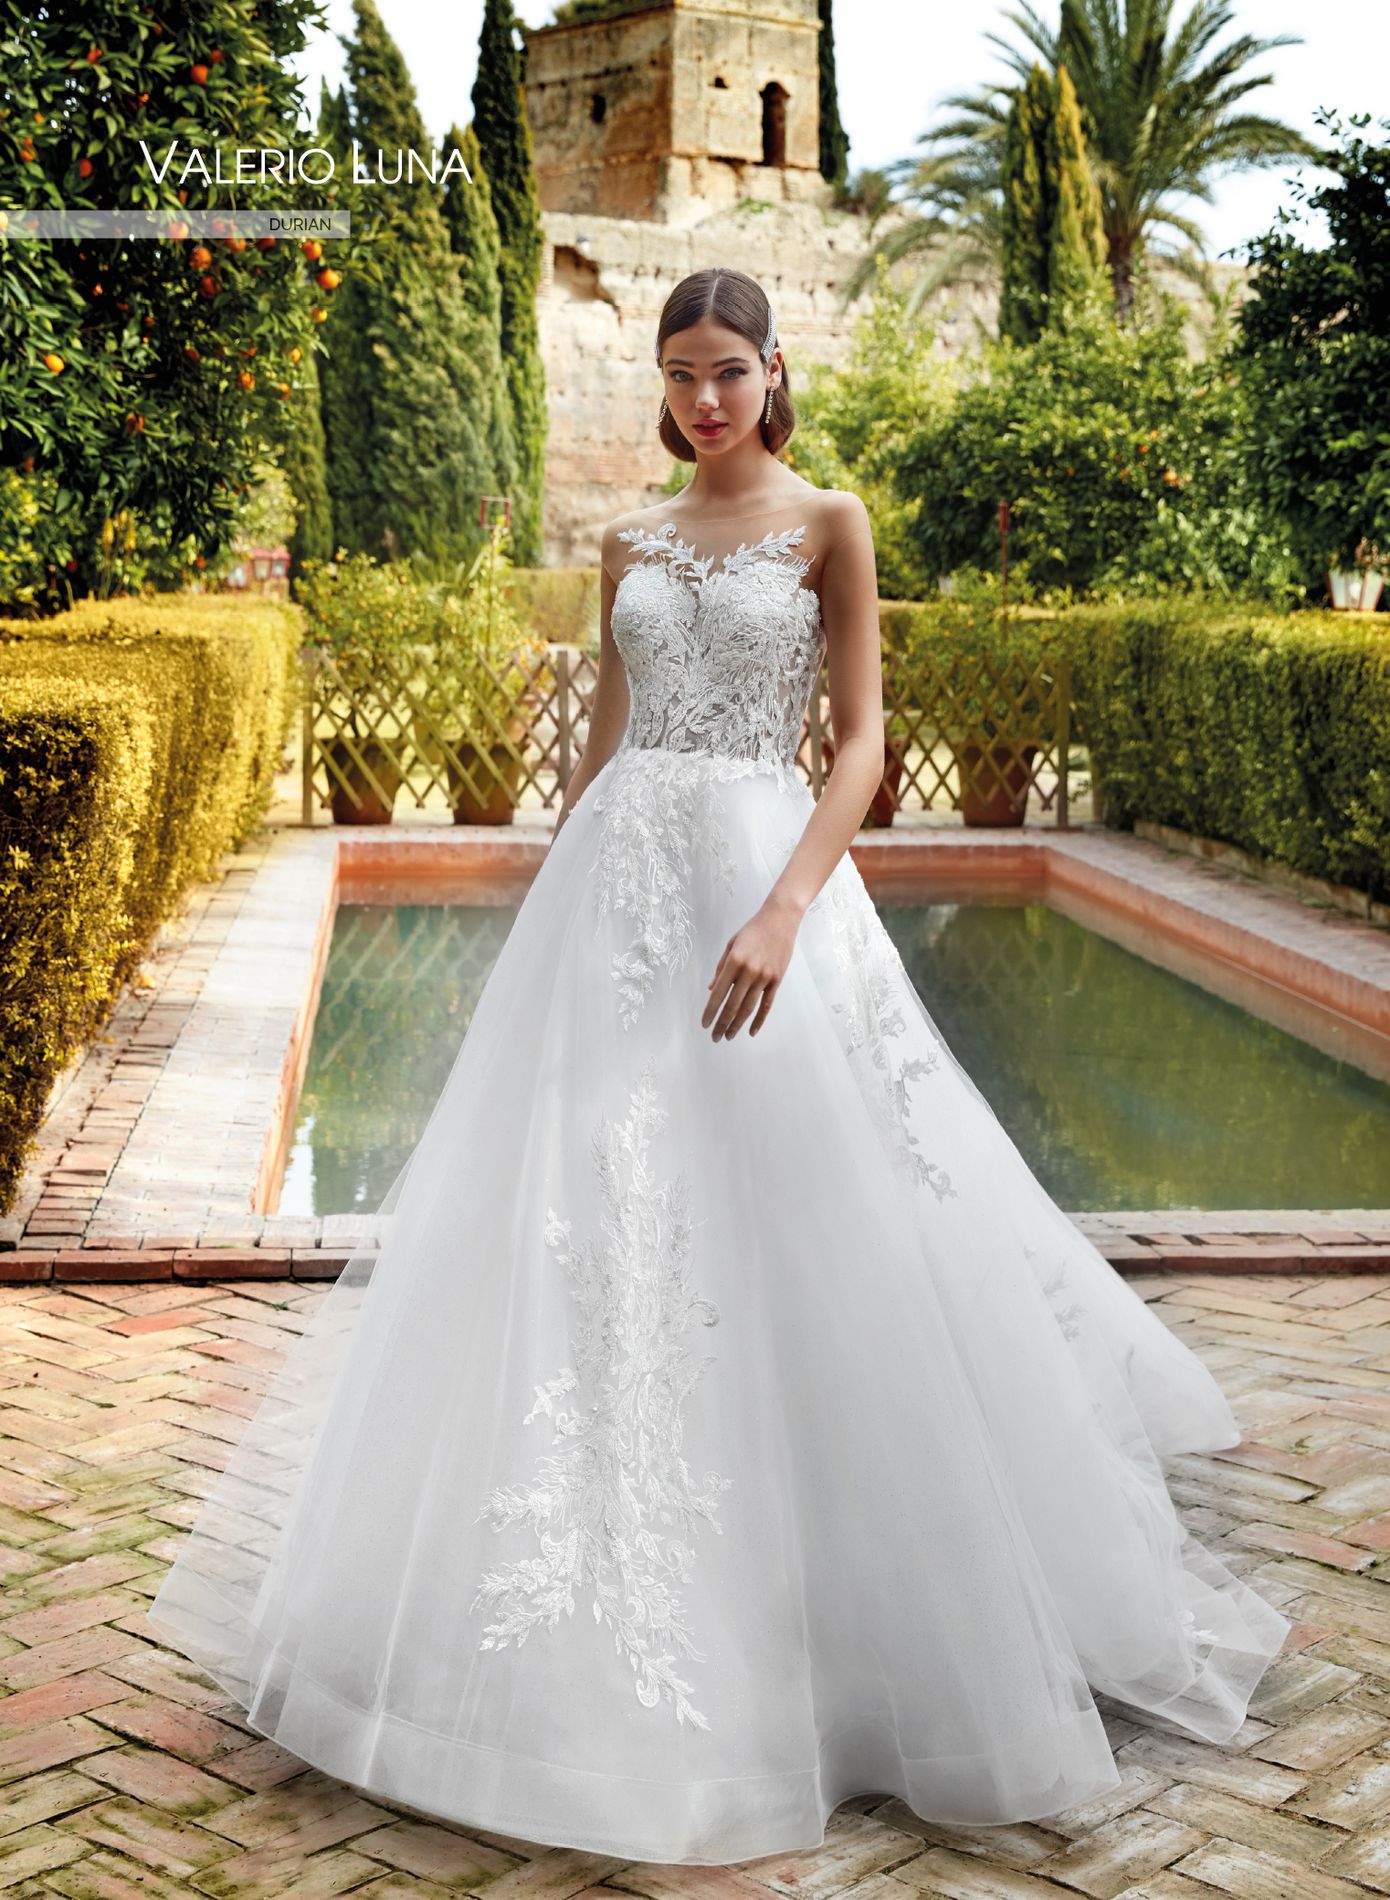 DURIAN - Wedding dresses | Valerio Luna